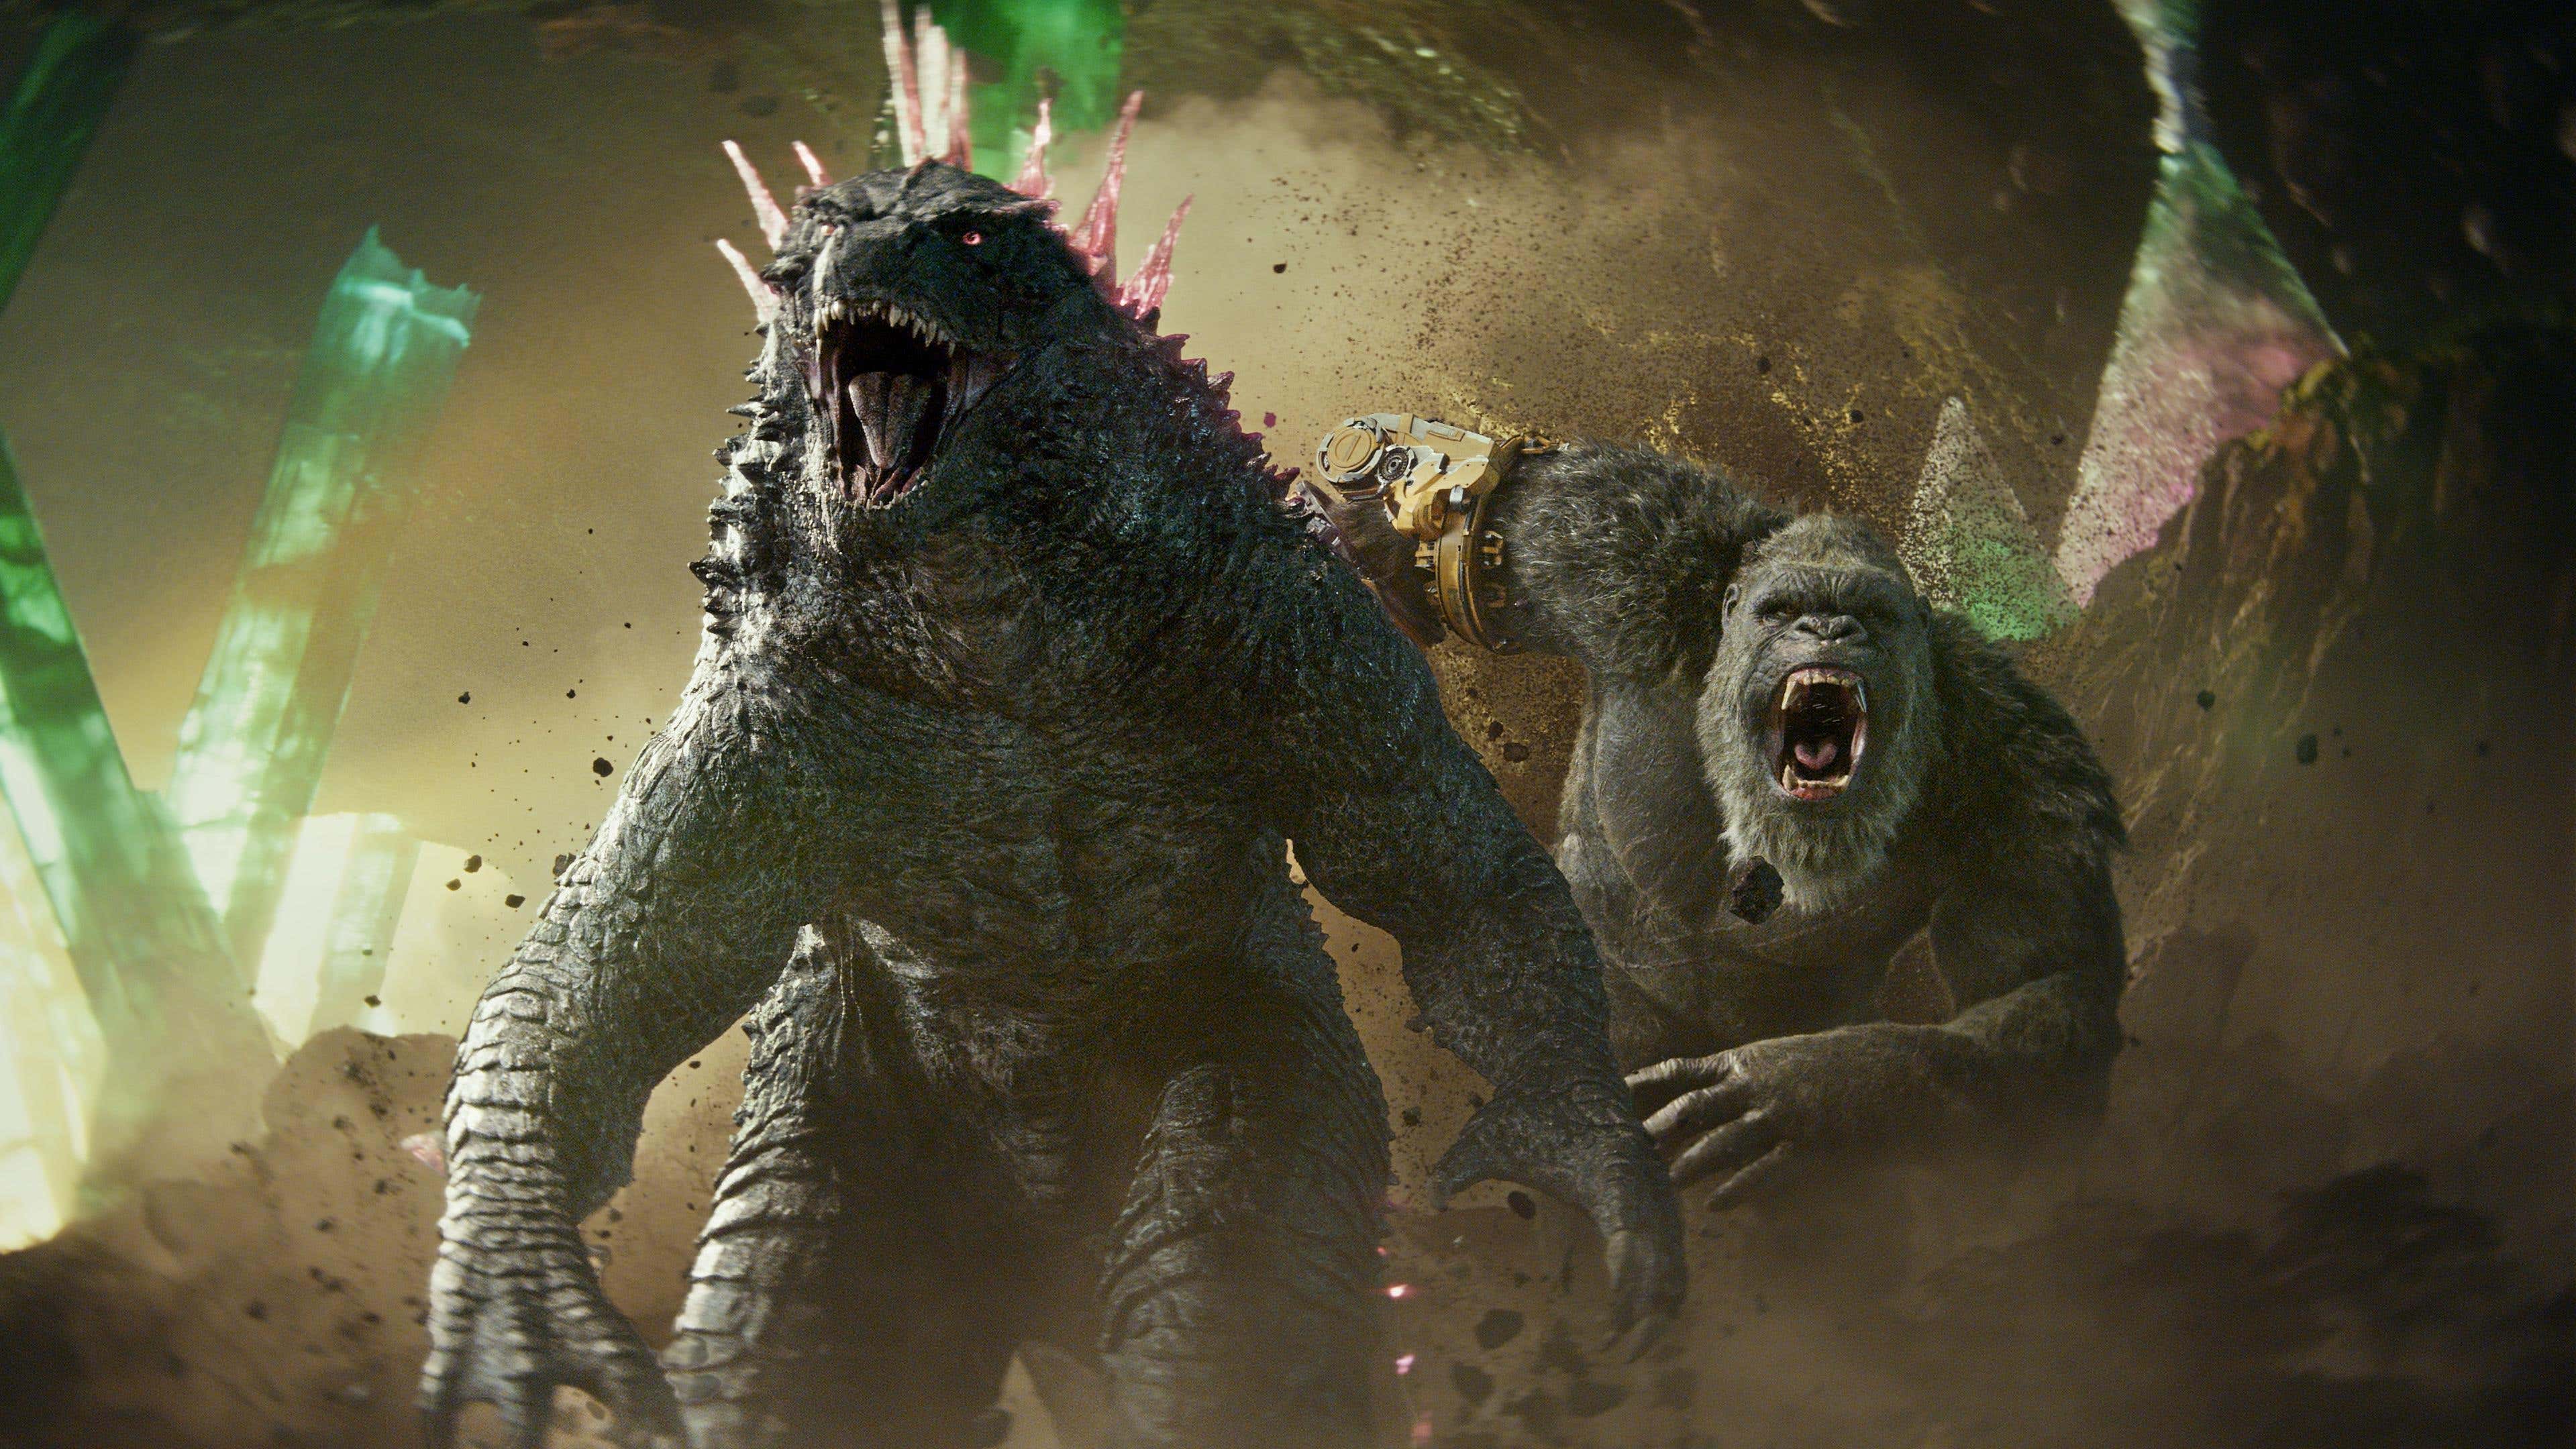 Godzilla x Kong: Yeni İmparatorluk Asla Tam Tıklanmaz başlıklı makale için resim